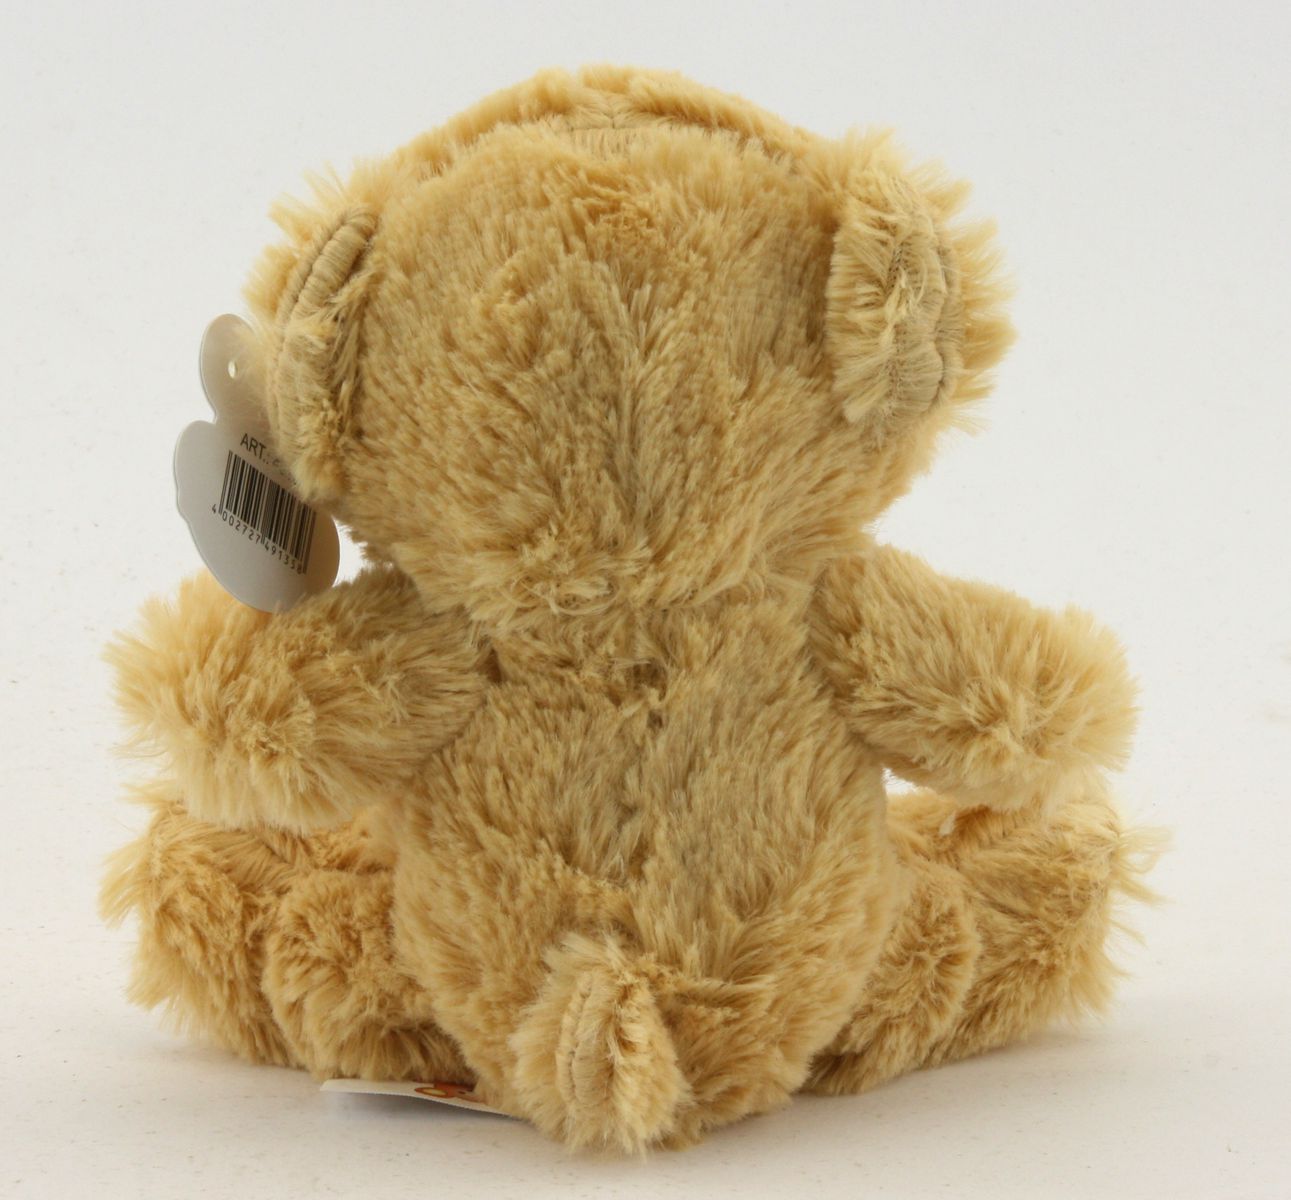 Eurotrain 49135 - Teddybär 15 cm 'Paul'